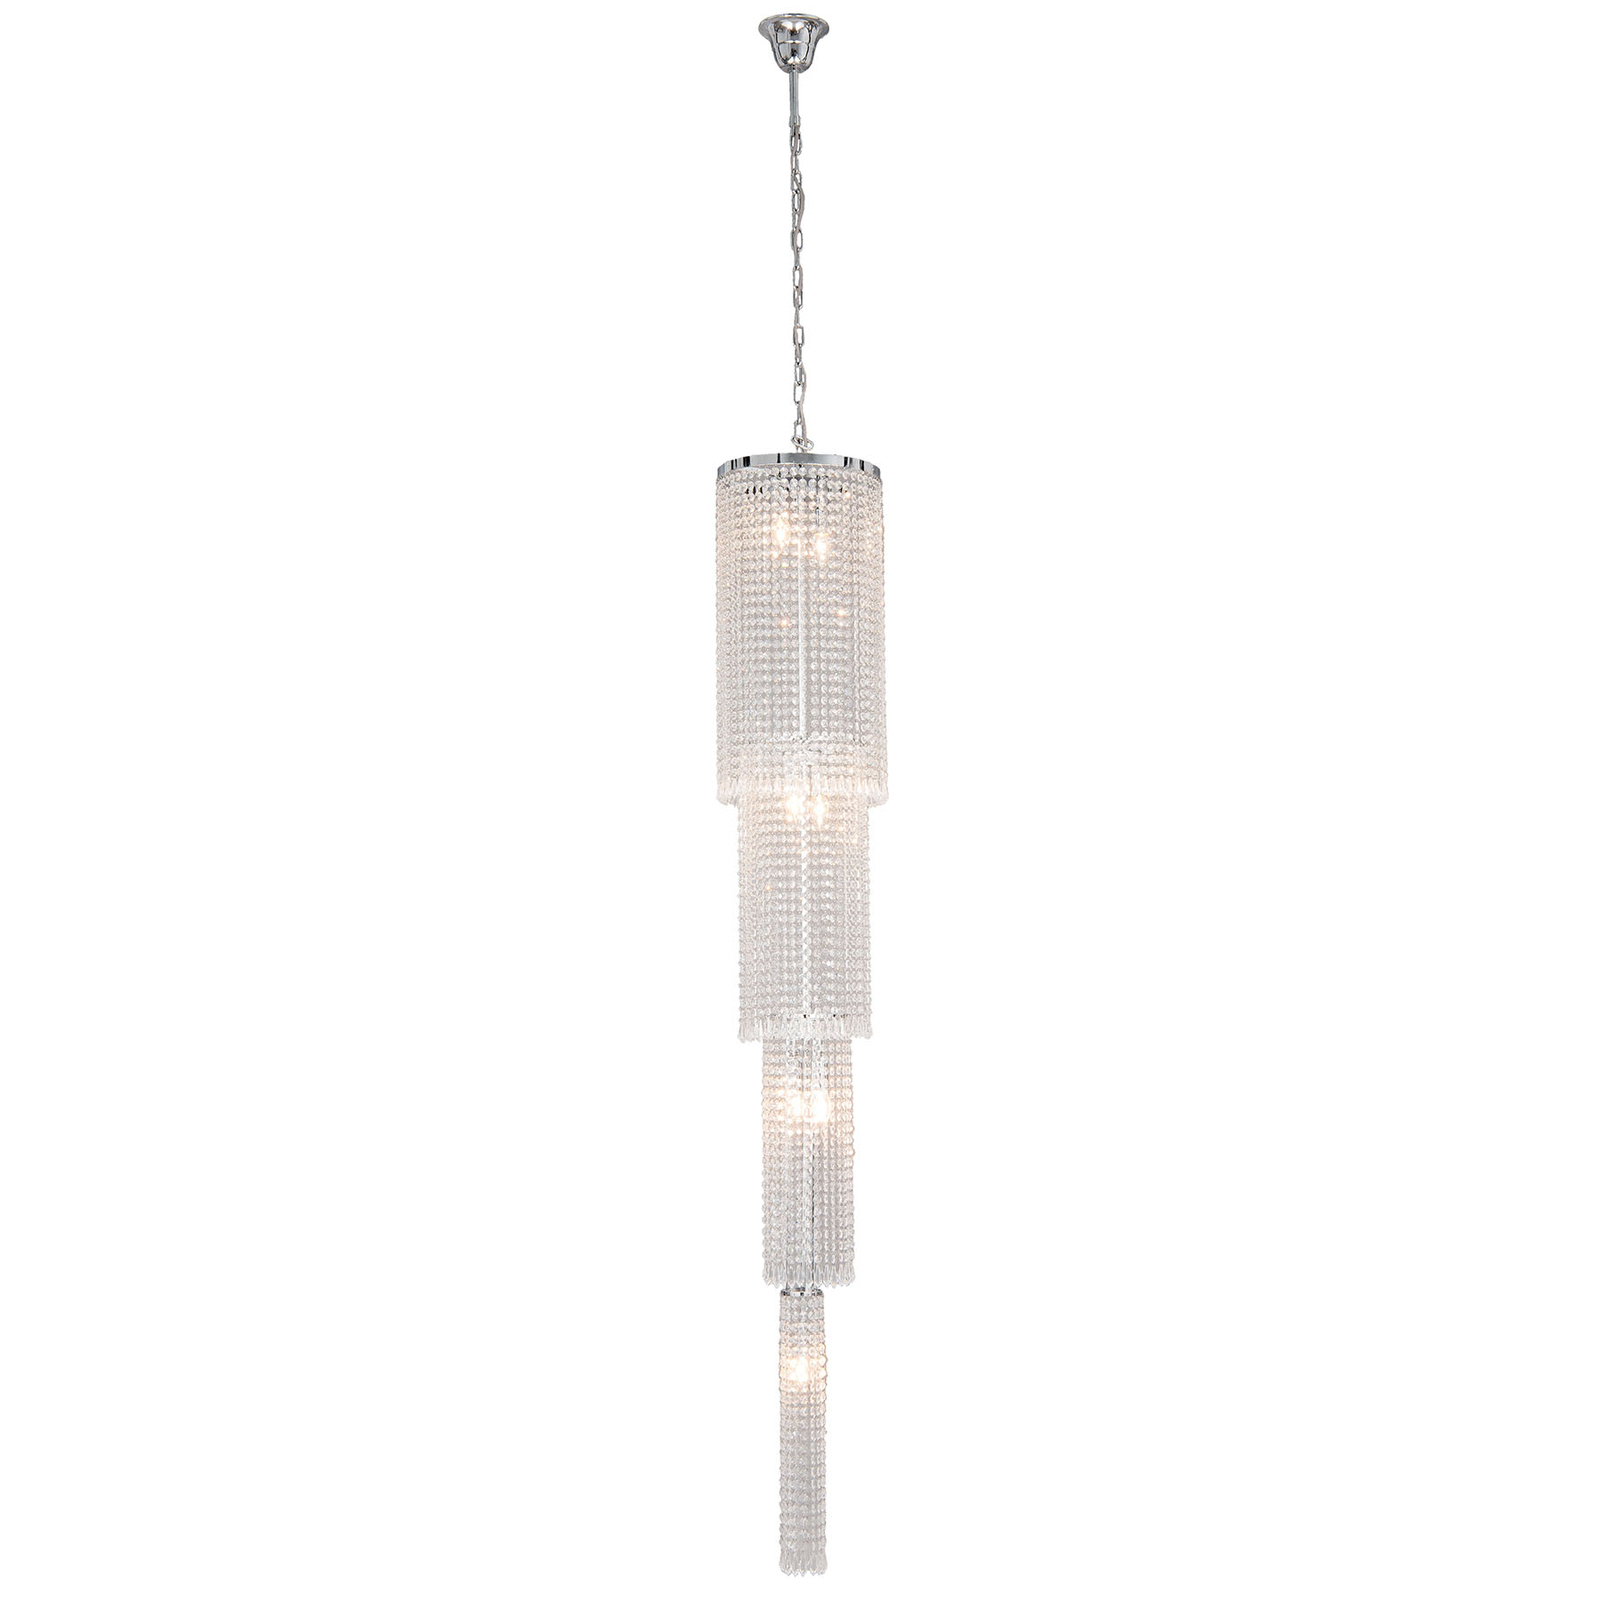 Lampa wisząca CR114 szklane ozdoby, wysokość 210cm